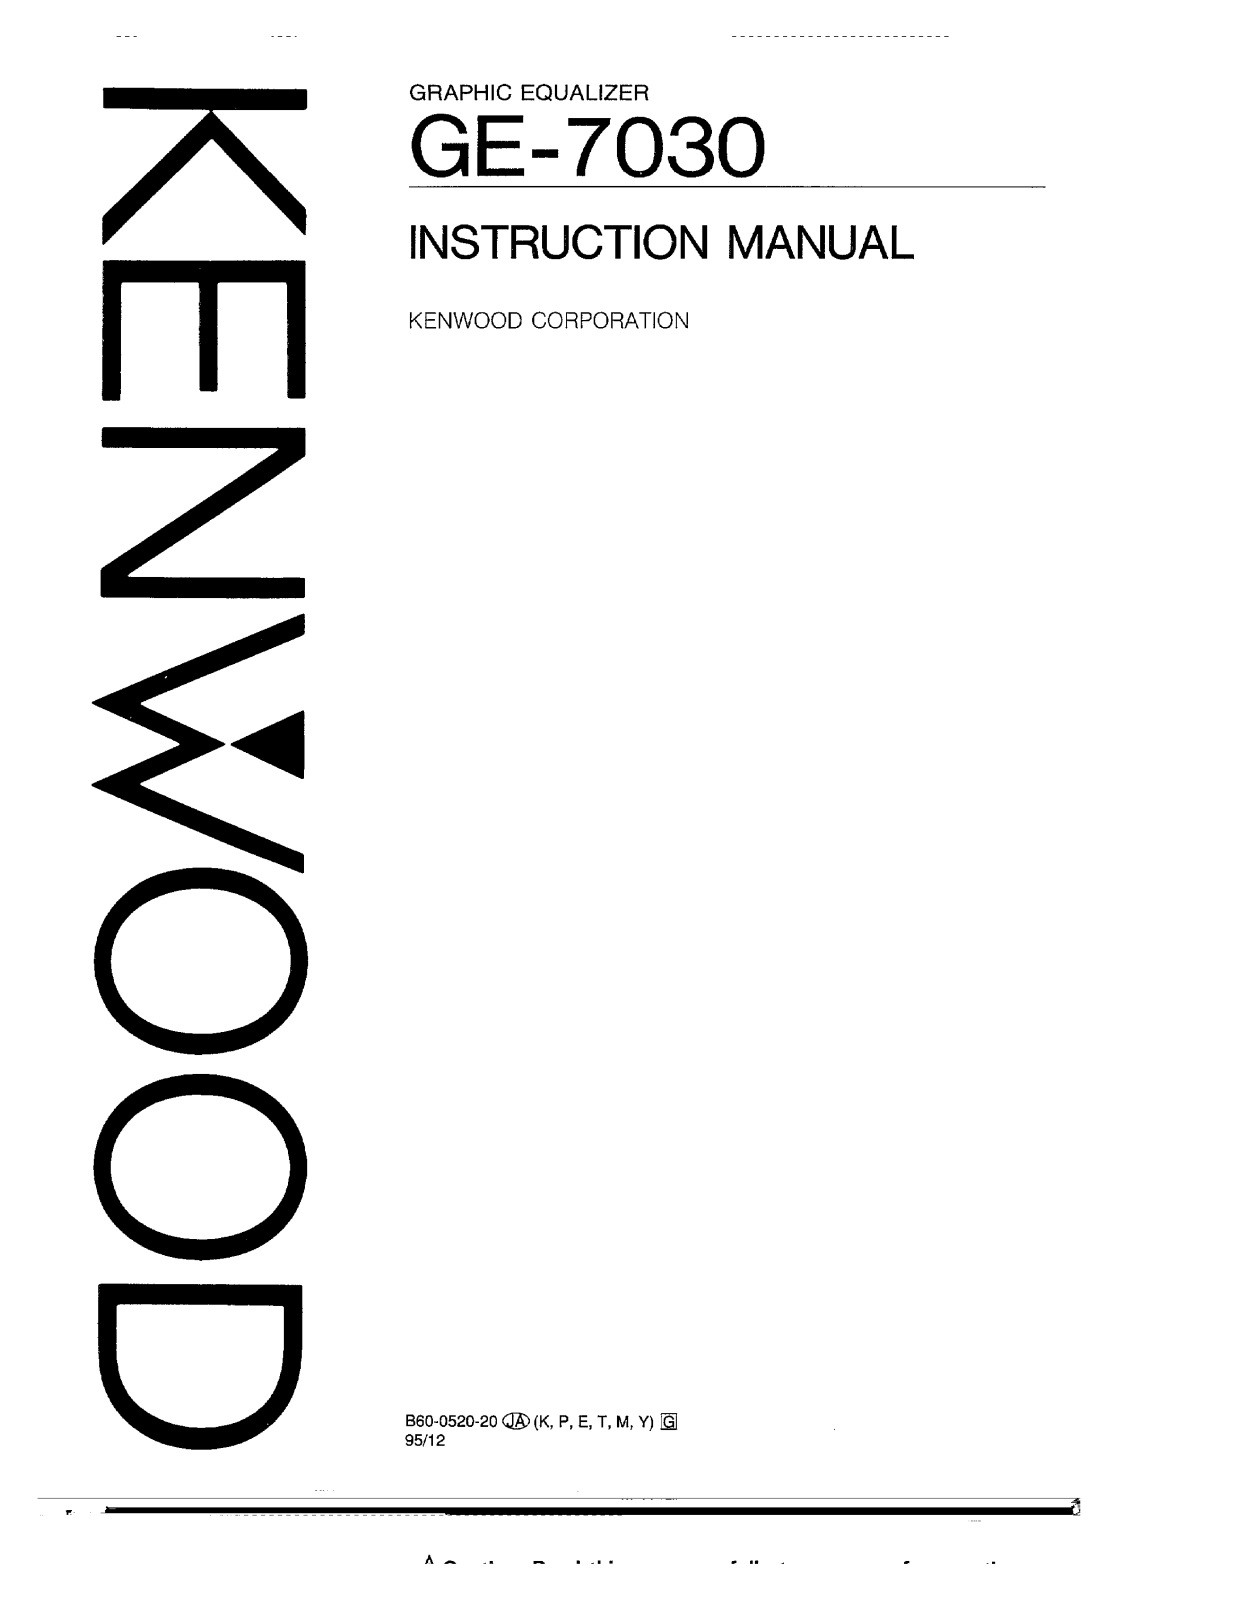 Kenwood GE-7030 Owner's Manual